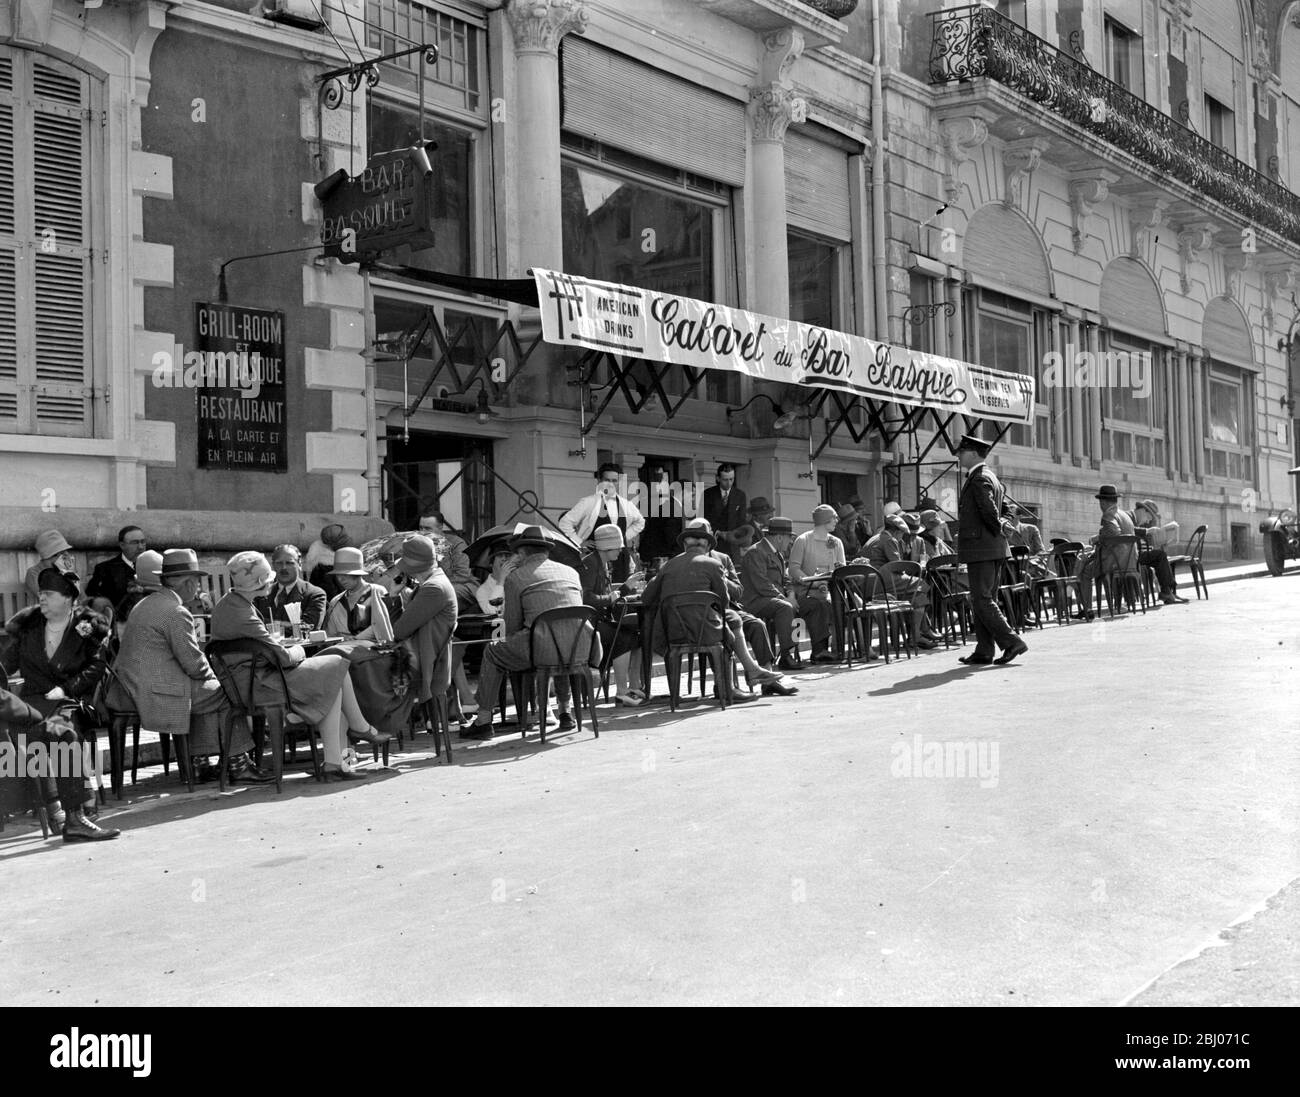 Cóctel en el Bar Vasco de Biarritz, Francia, el 23 de marzo de 1927 - - - - - - - - - - - - - - - - - - - - - - - - - - - - - - - - - - - - - - - - - - - - - - - - - - - - - - - - - - - Foto de stock